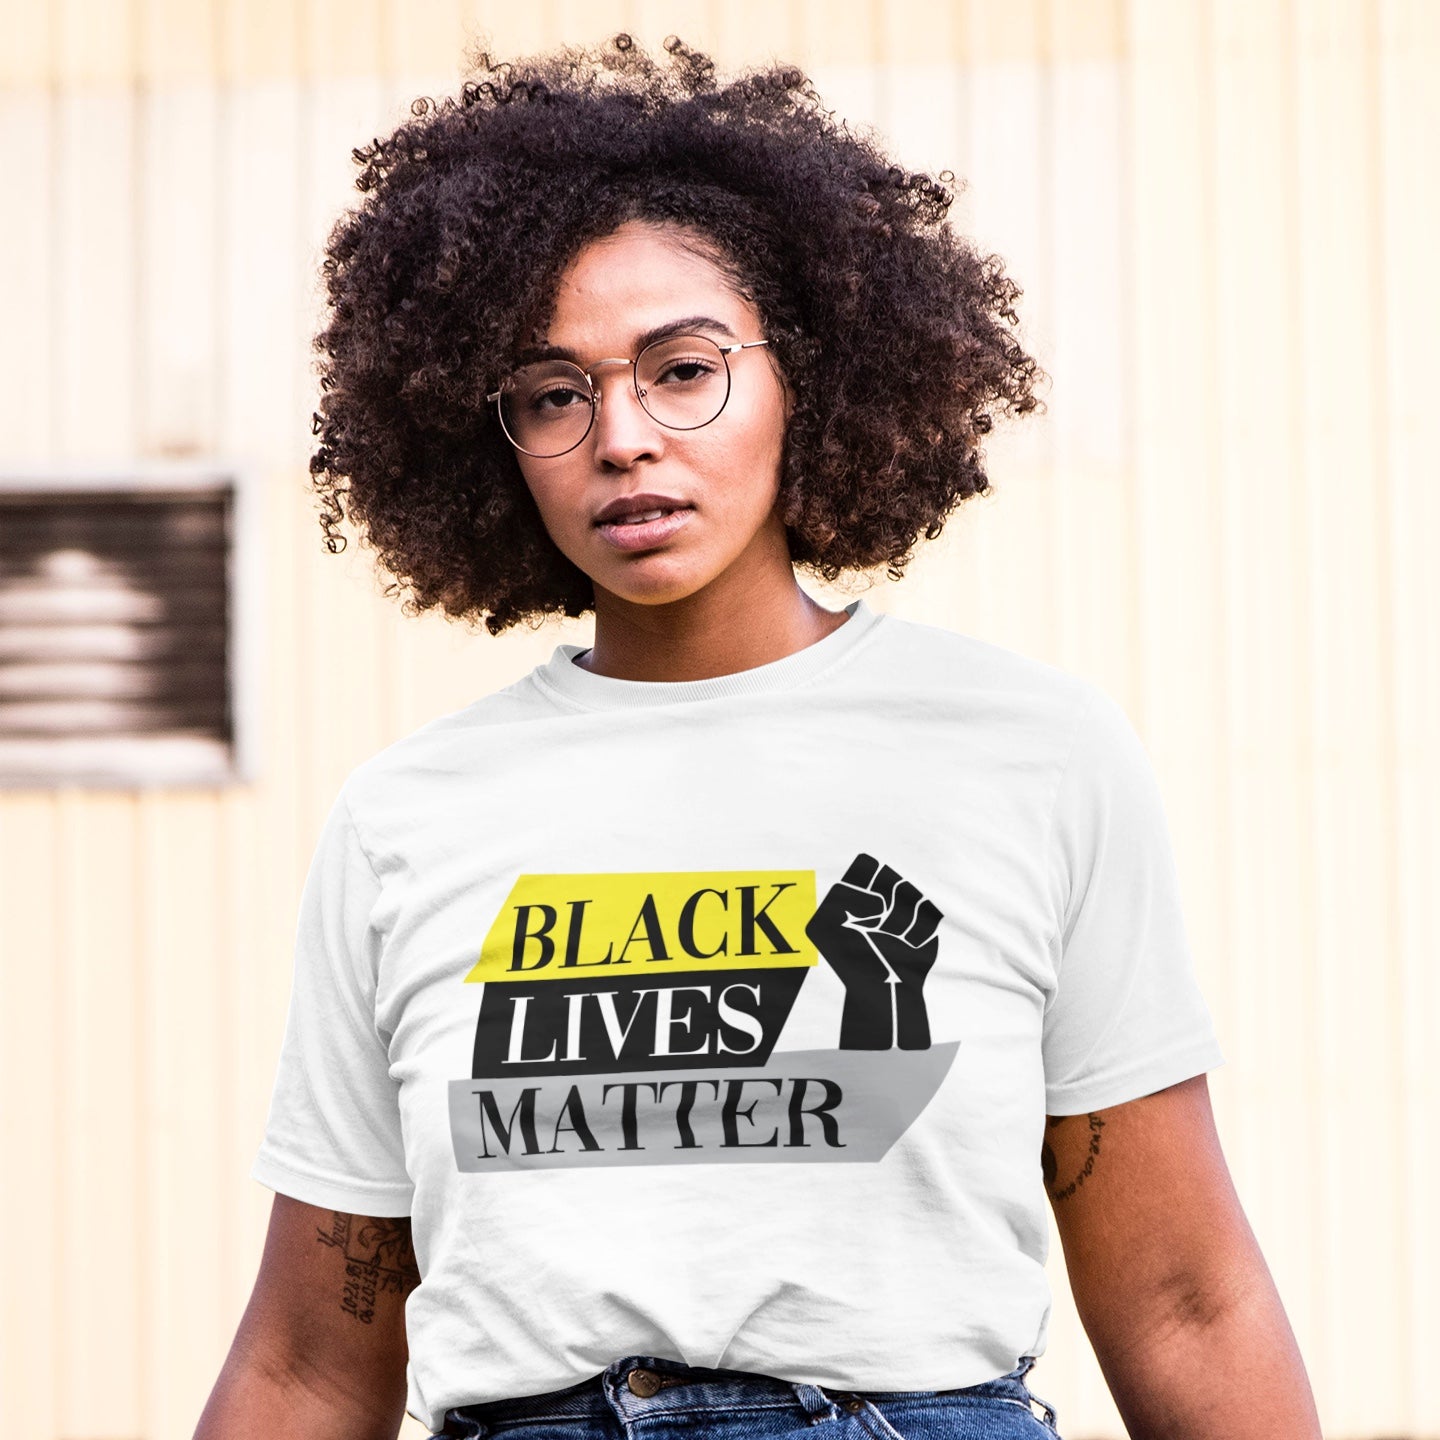 Model wears a t-shirt that reads "Black lives matter"